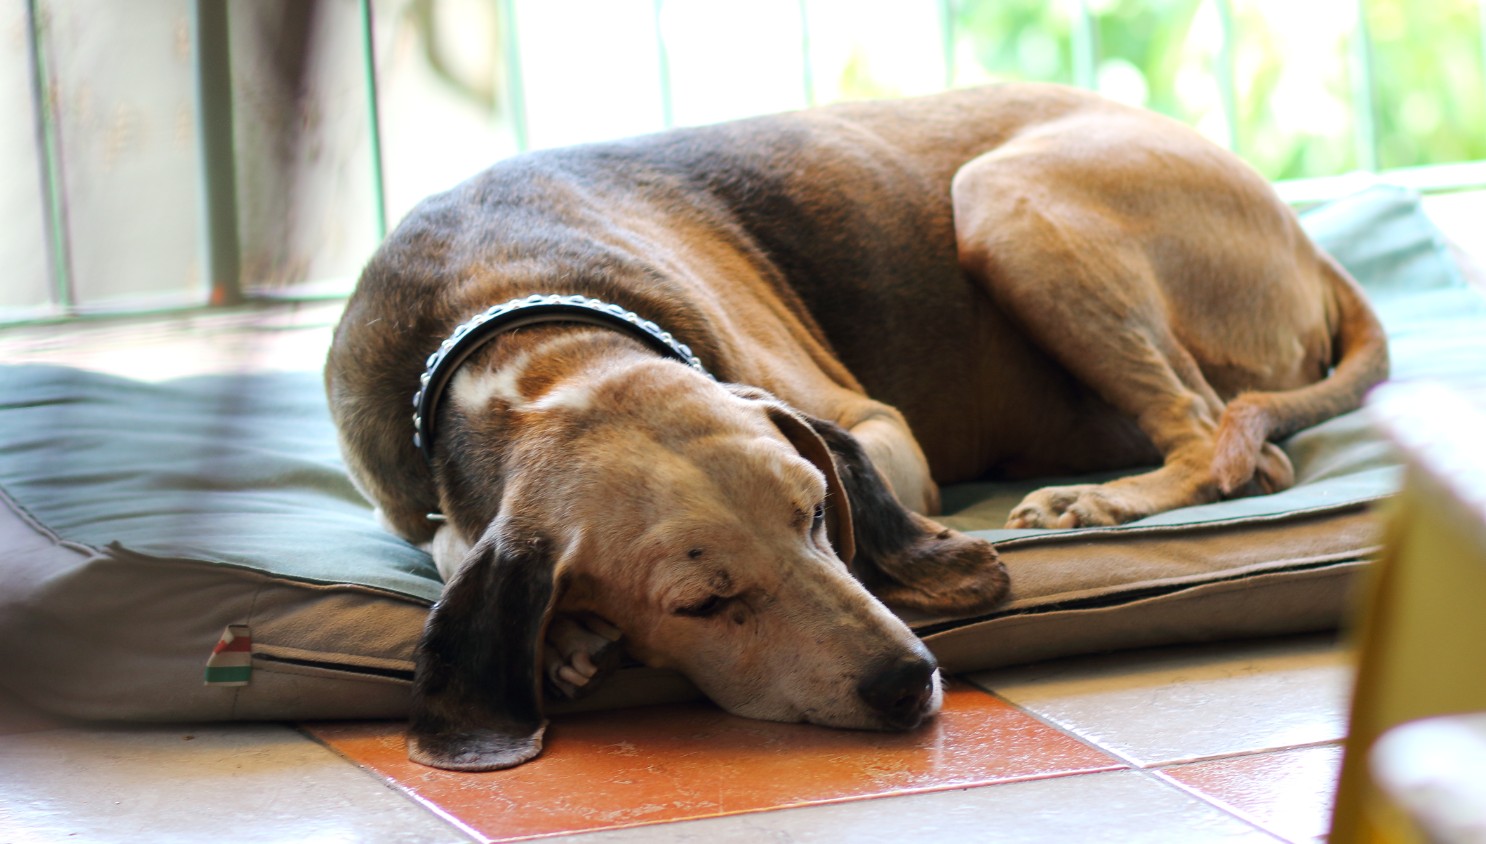 Old brown dog sleeping on floor